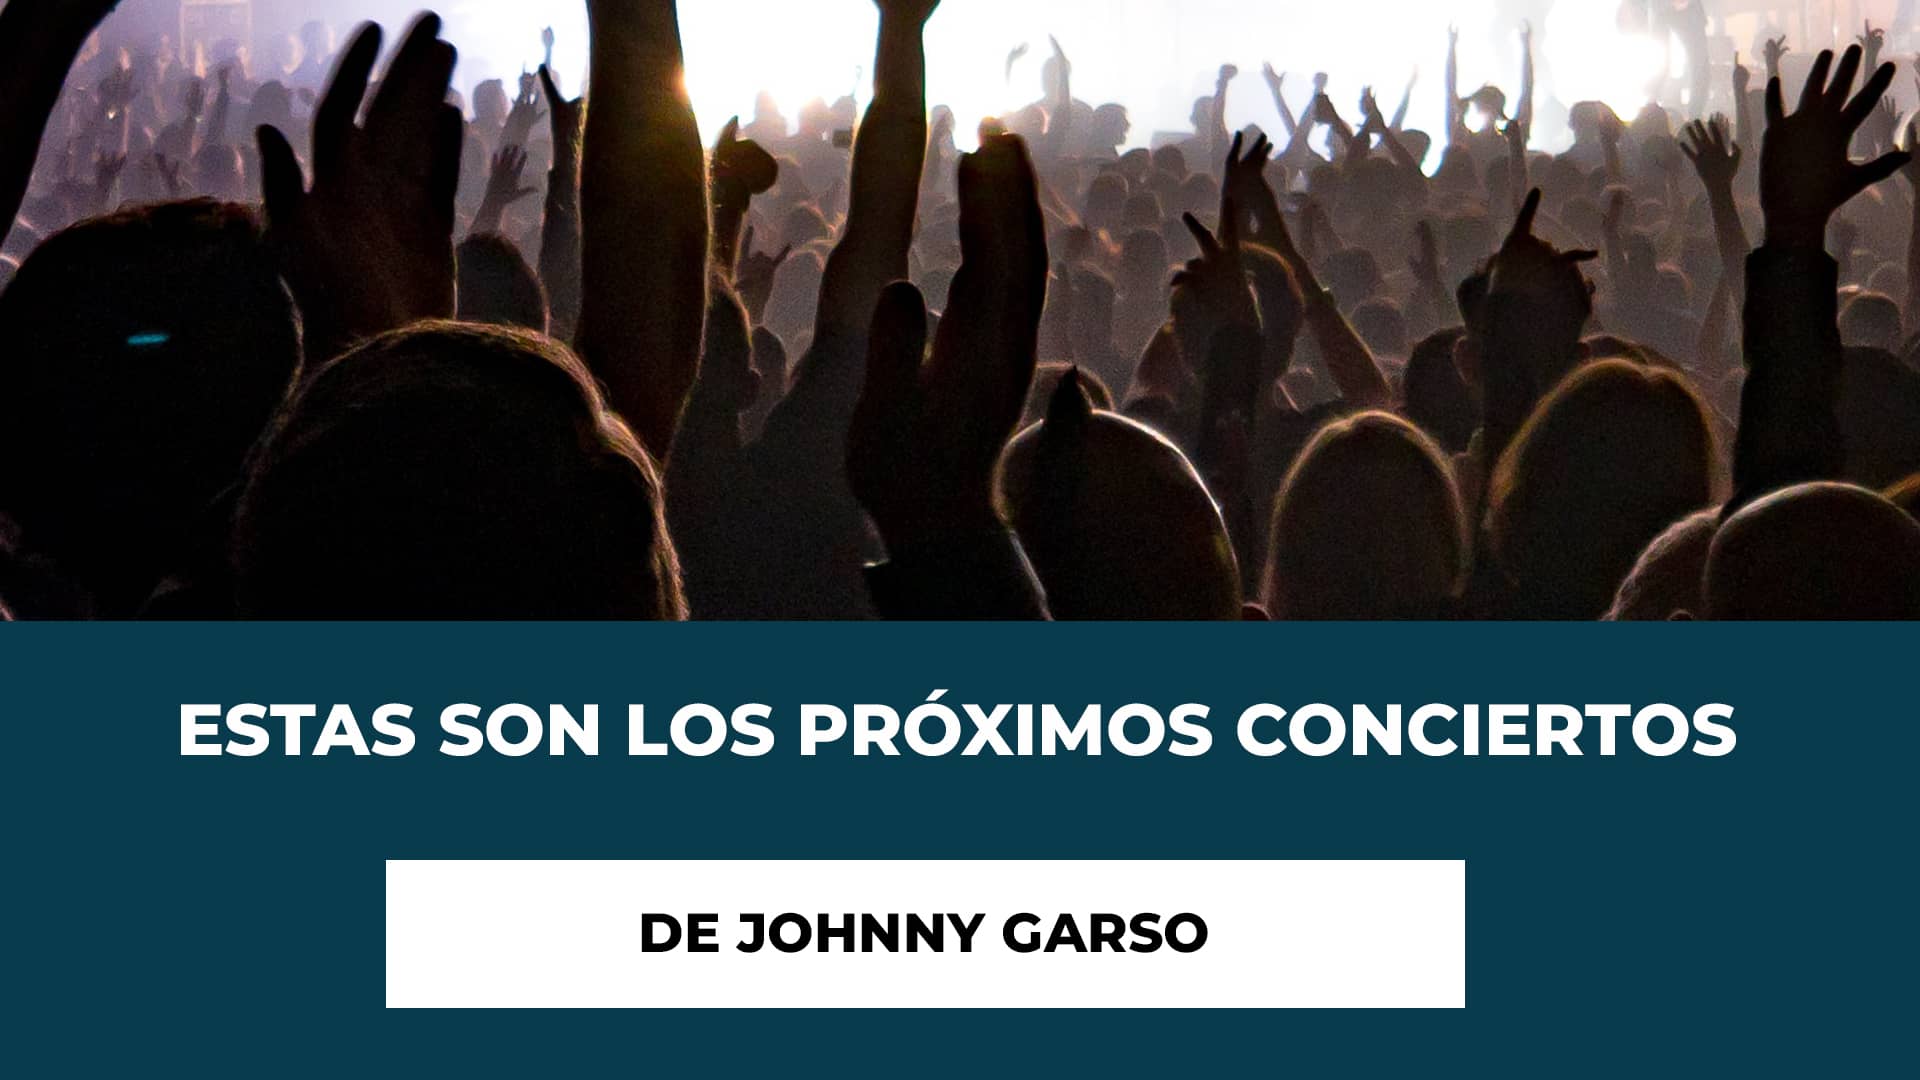 Estas son los próximos conciertos de Johnny Garso - Próximas fechas de sus actuaciones - Descripción del Álbum - Ciudades y recintos